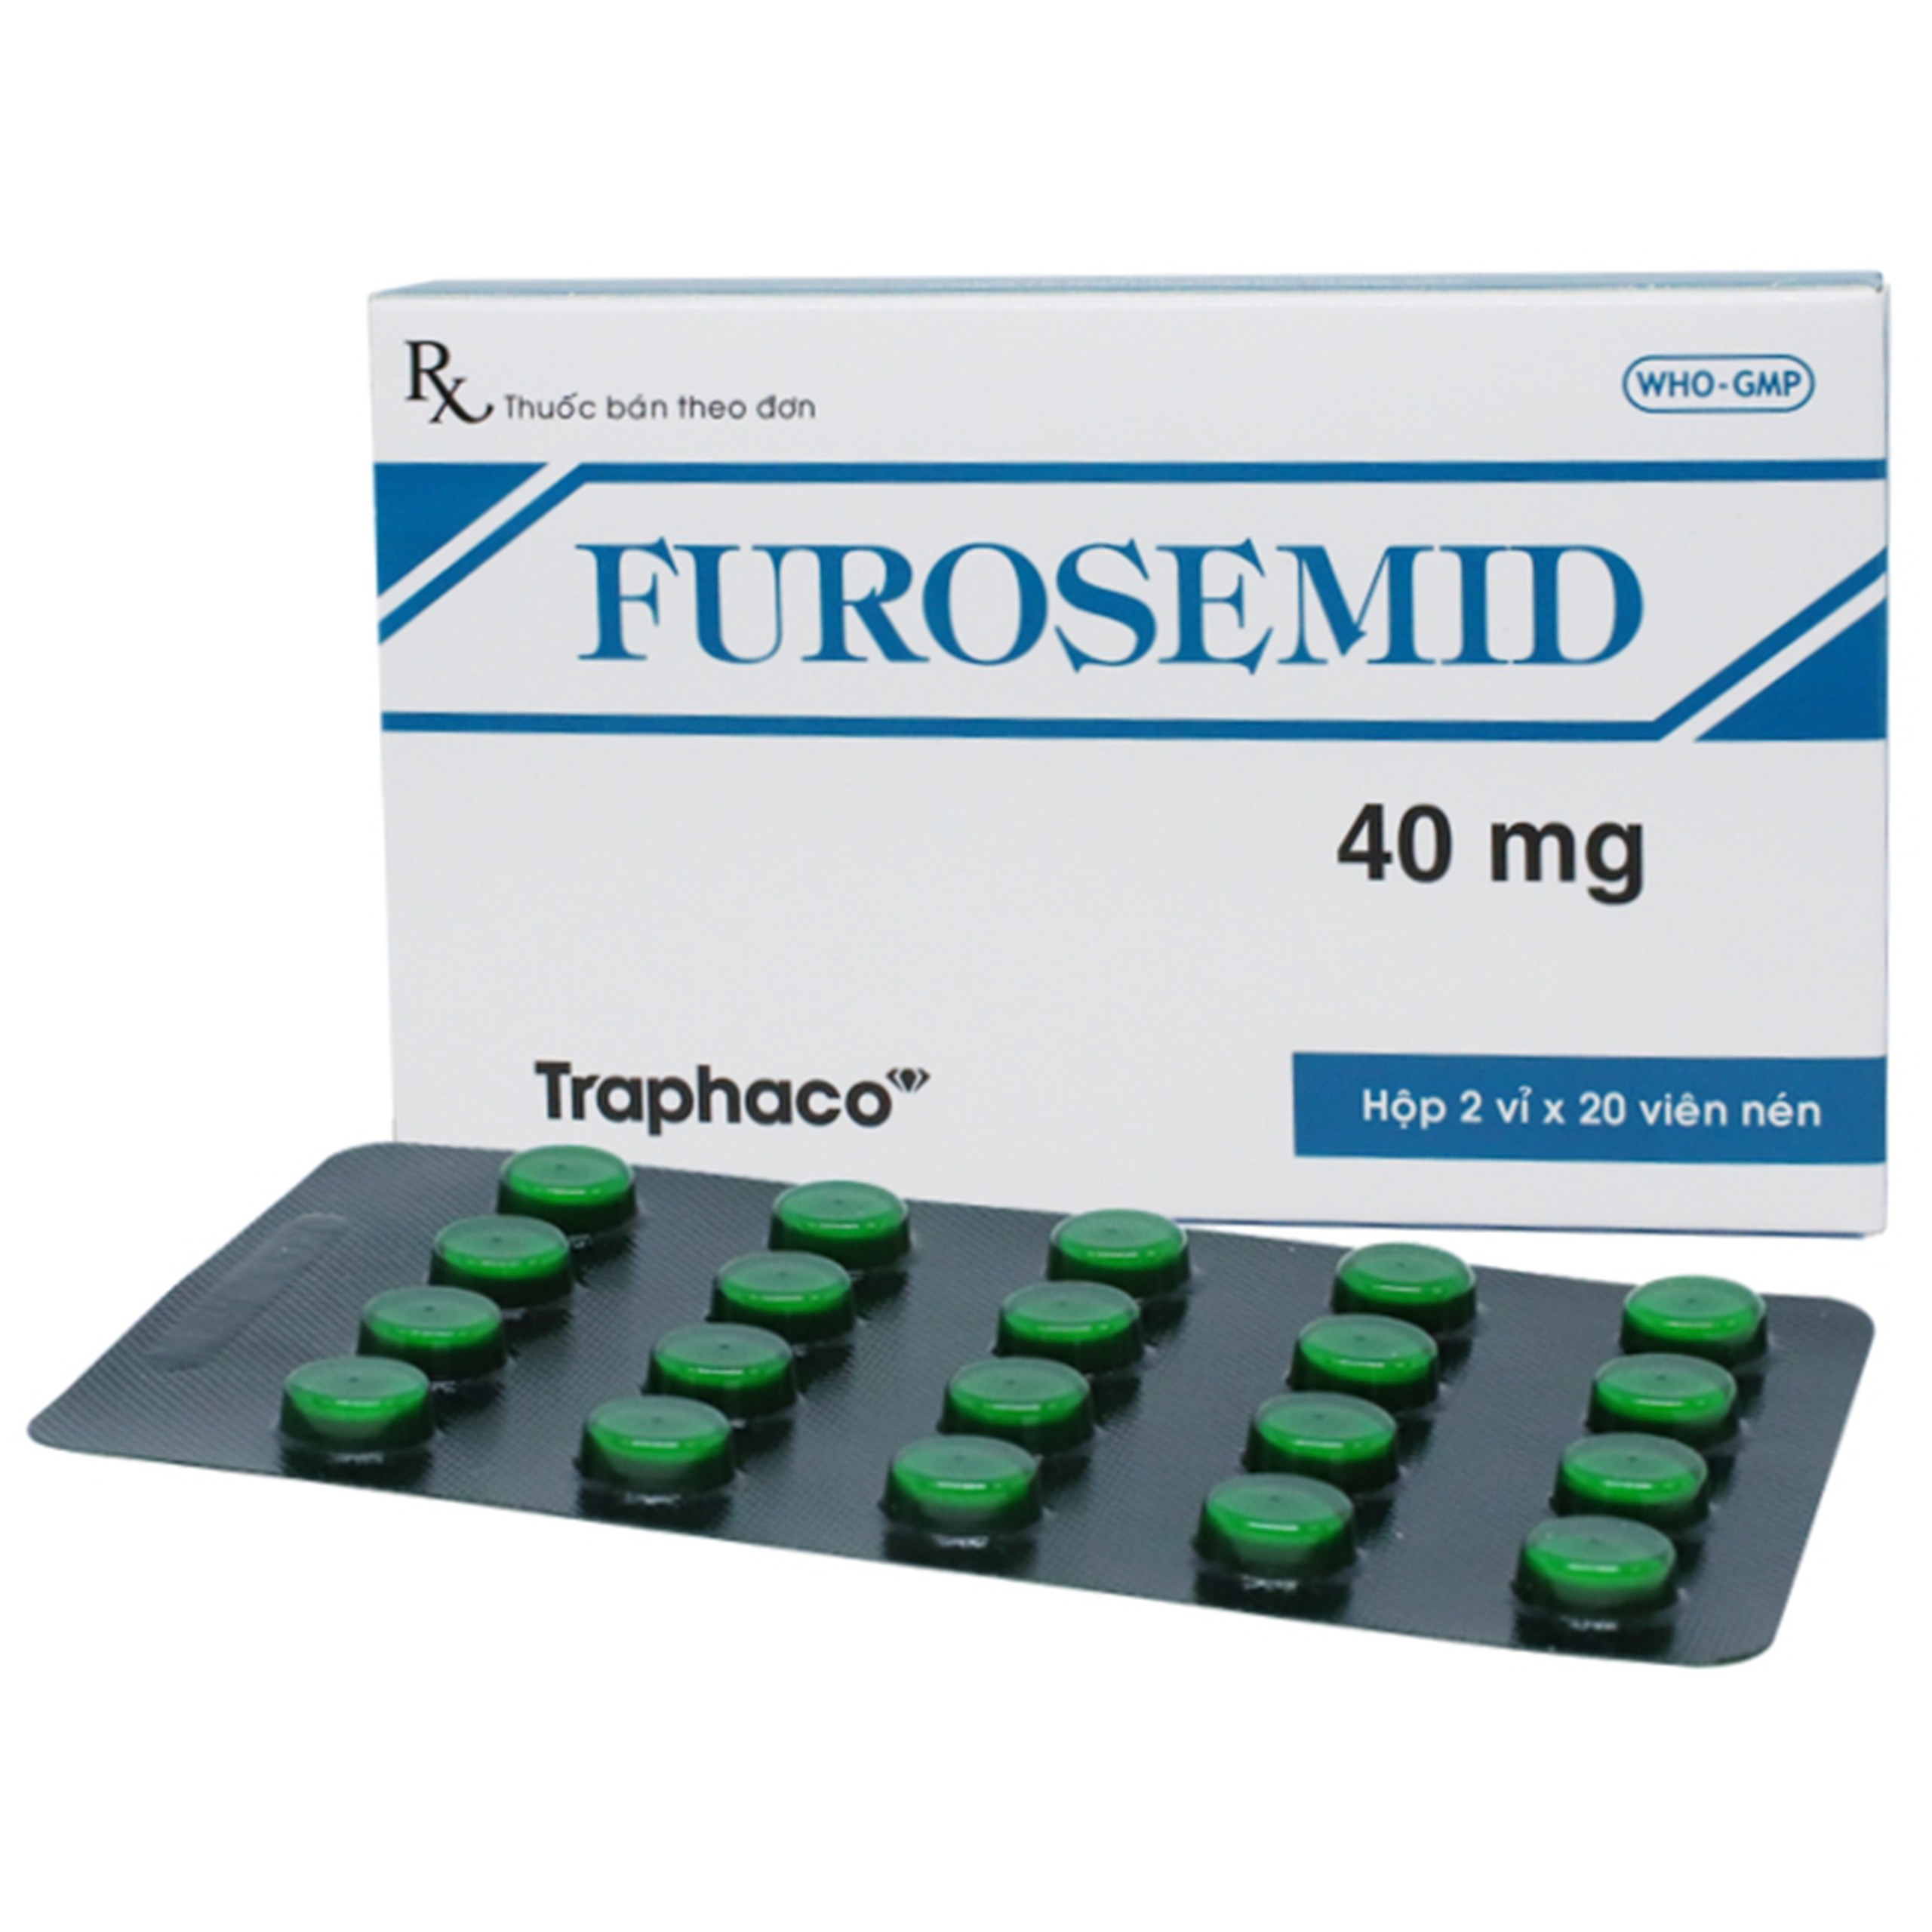 Thuốc Furosemid 40mg Traphaco điều trị phù, tăng huyết áp nhẹ hay trung bình (2 vỉ x 20 viên)